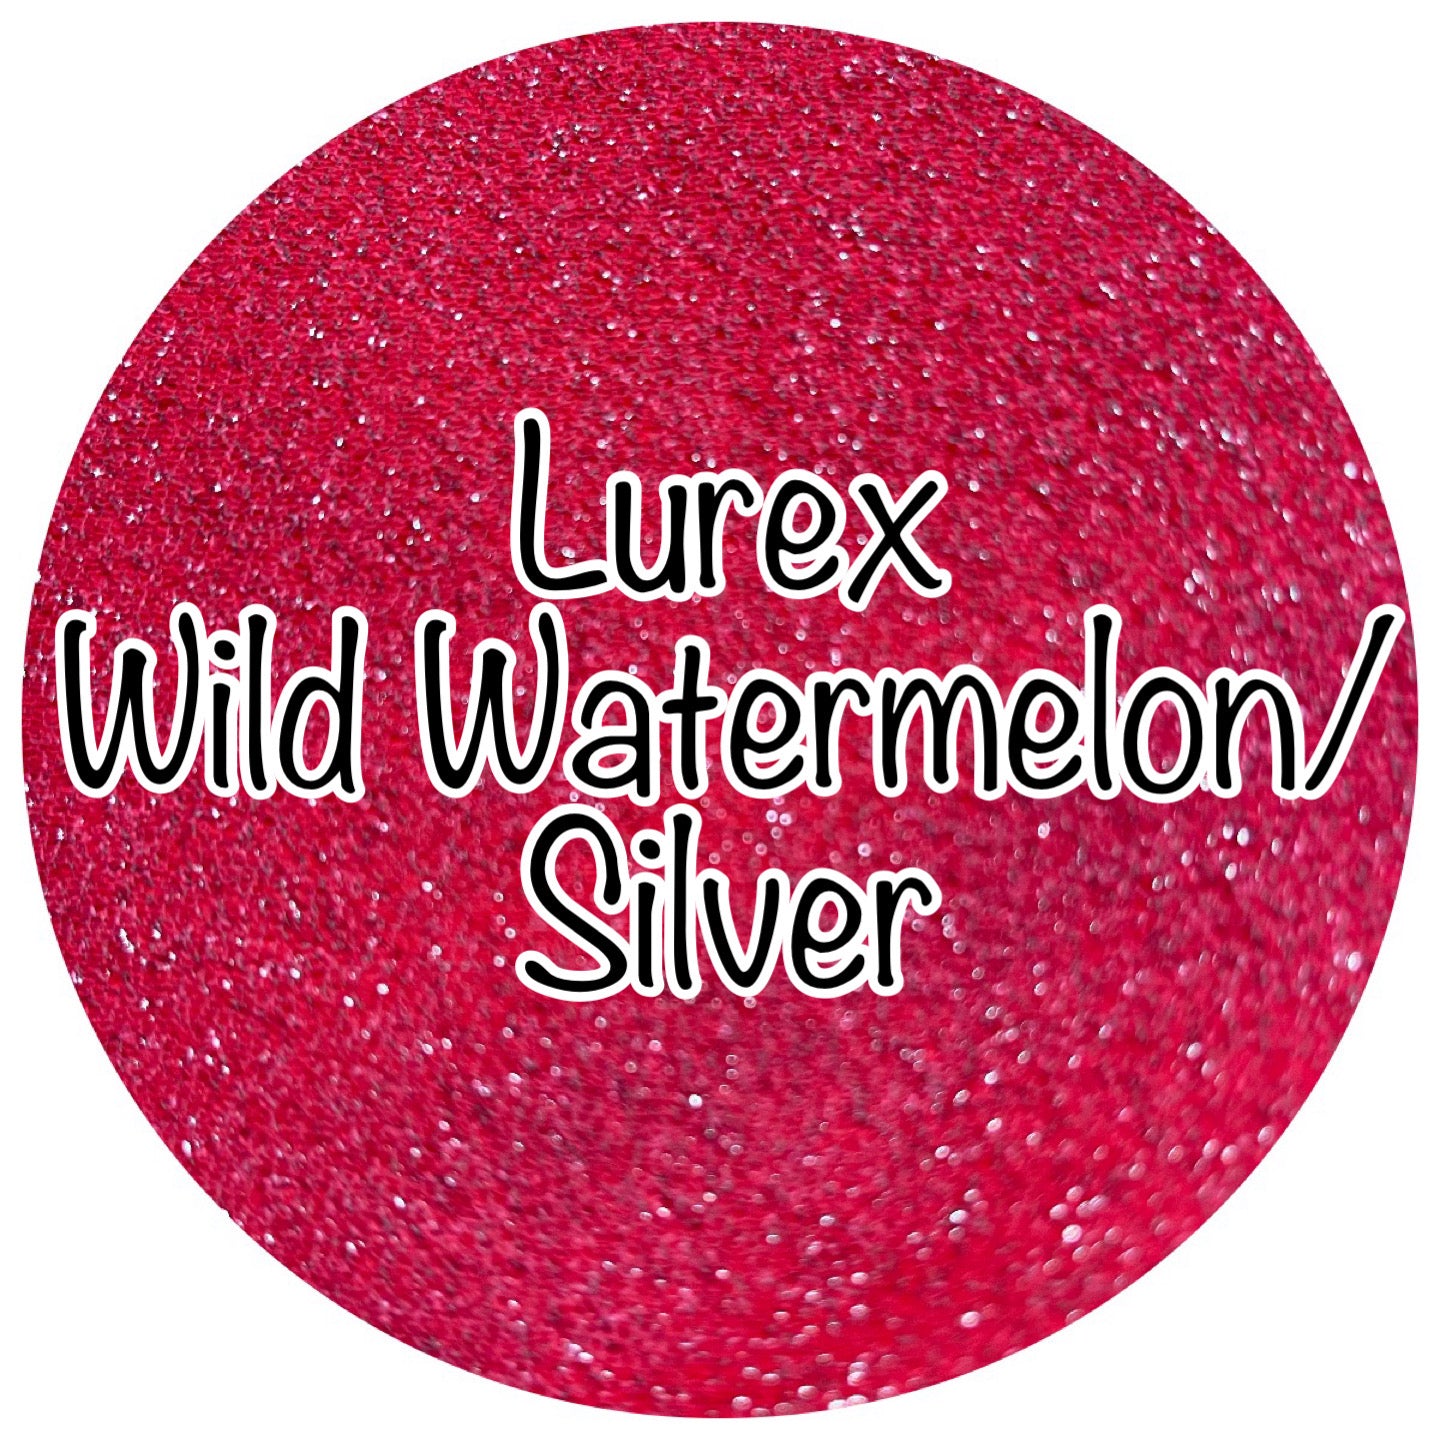 Lurex Wild Watermelon / Silver